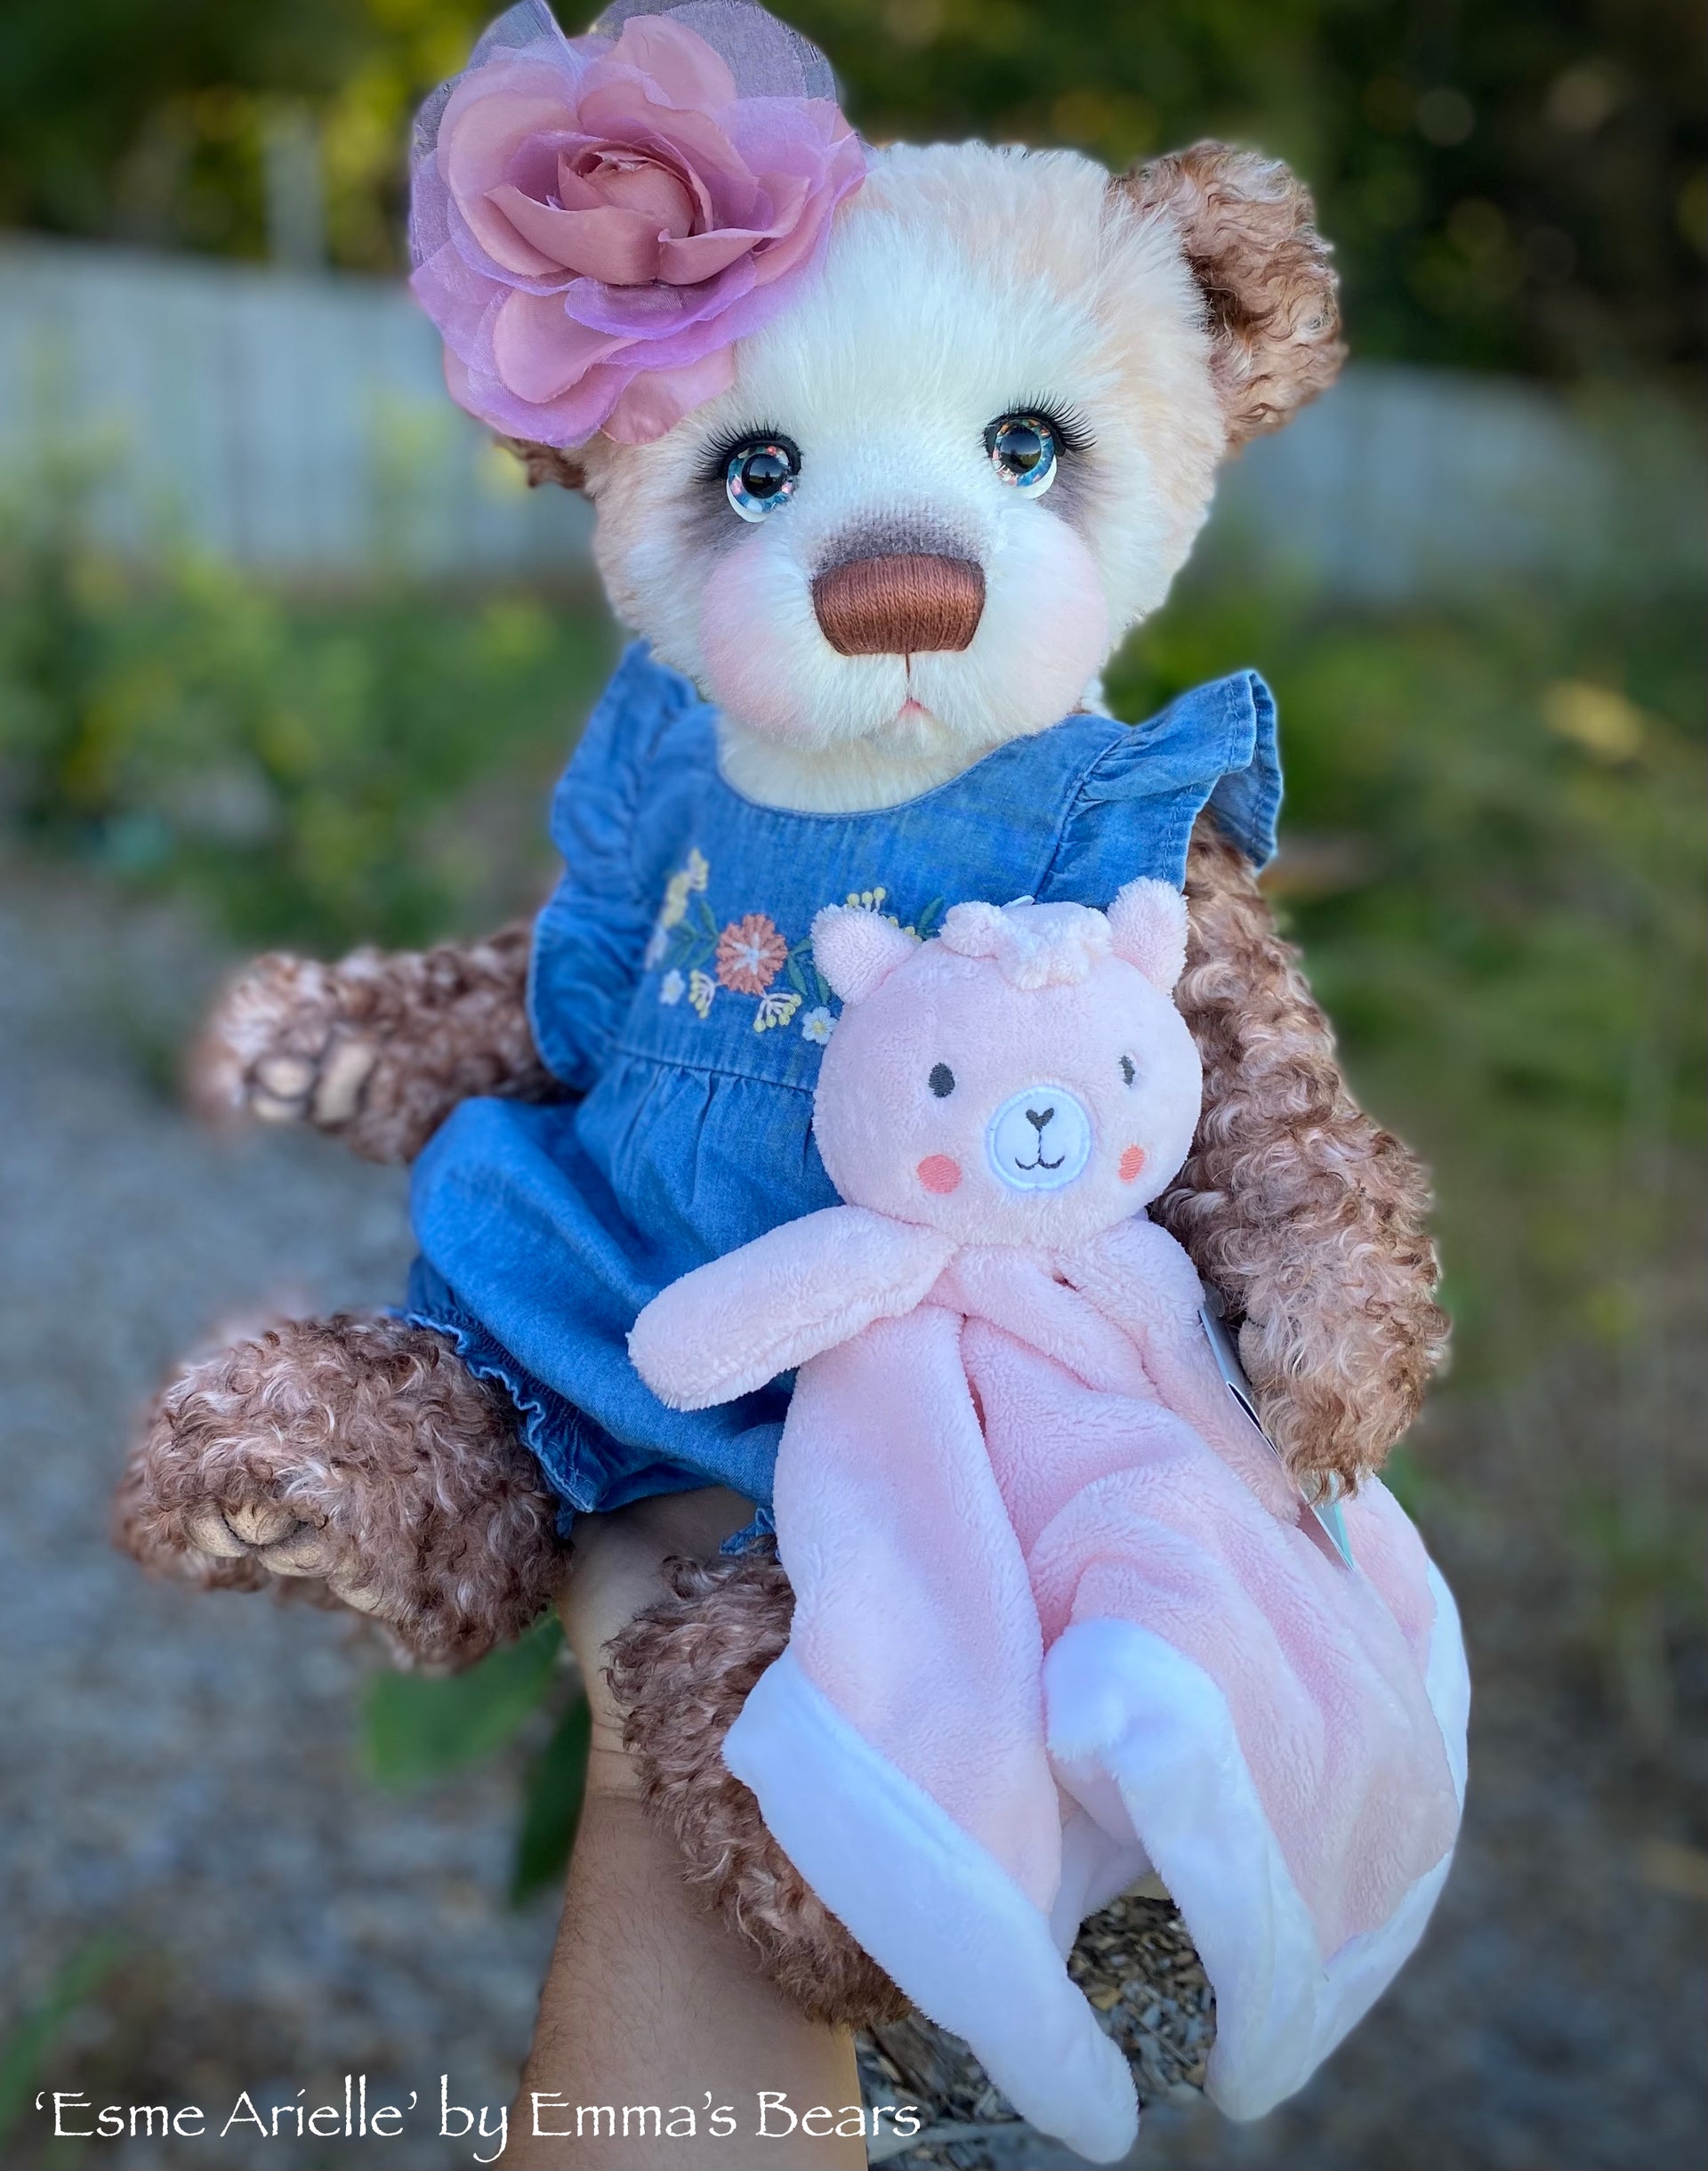 Esme Arielle - 19" Mohair and Alpaca Artist Baby Bear by Emma's Bears - OOAK